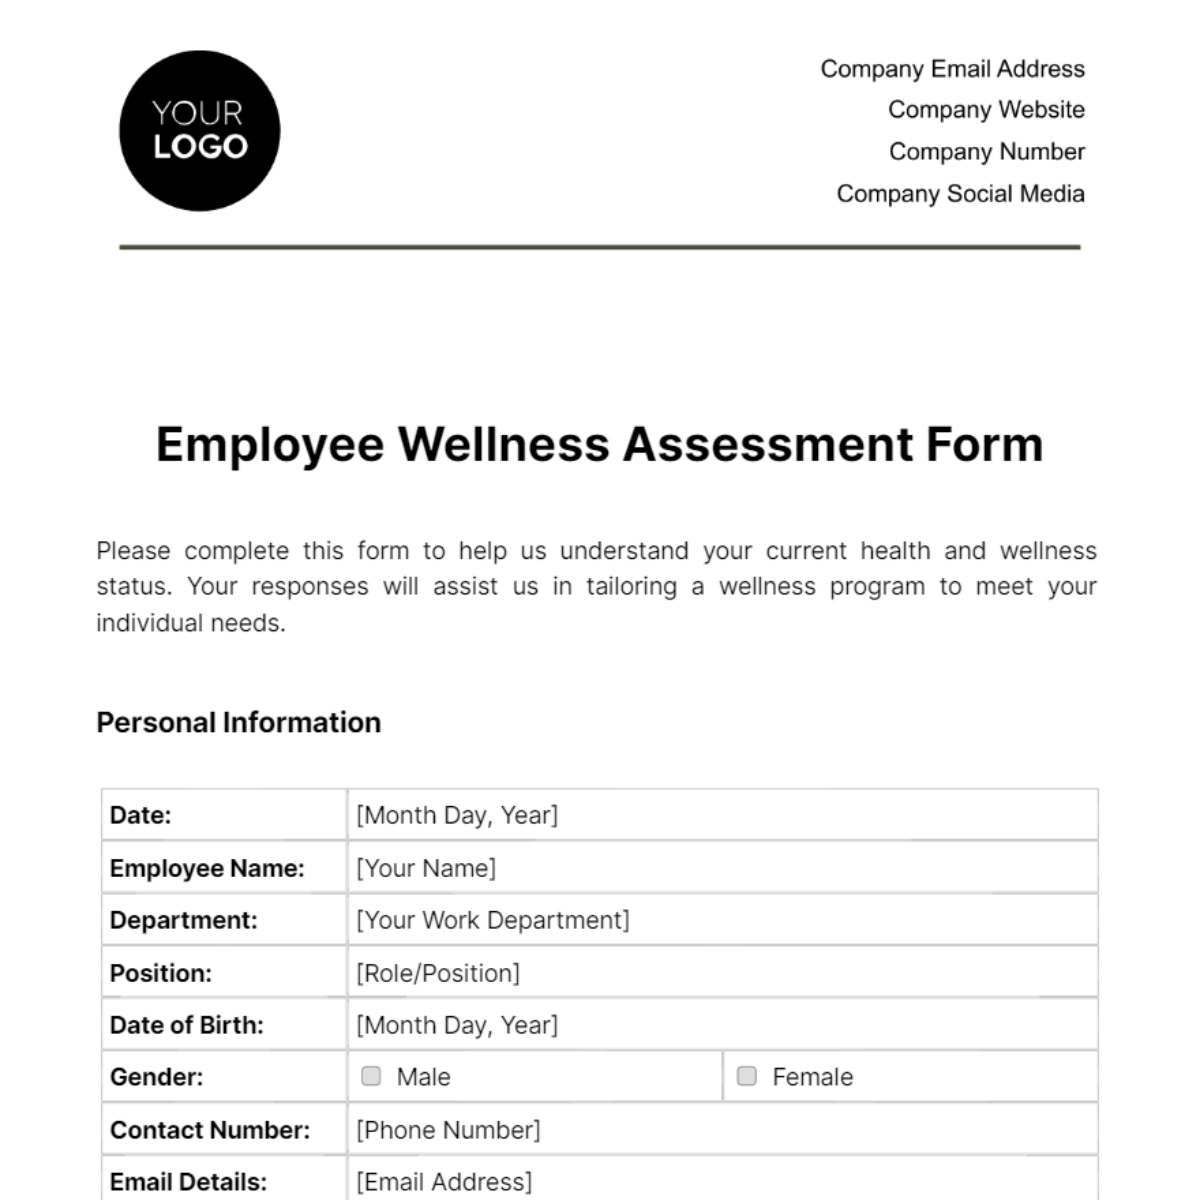 Employee Wellness Assessment Form Template